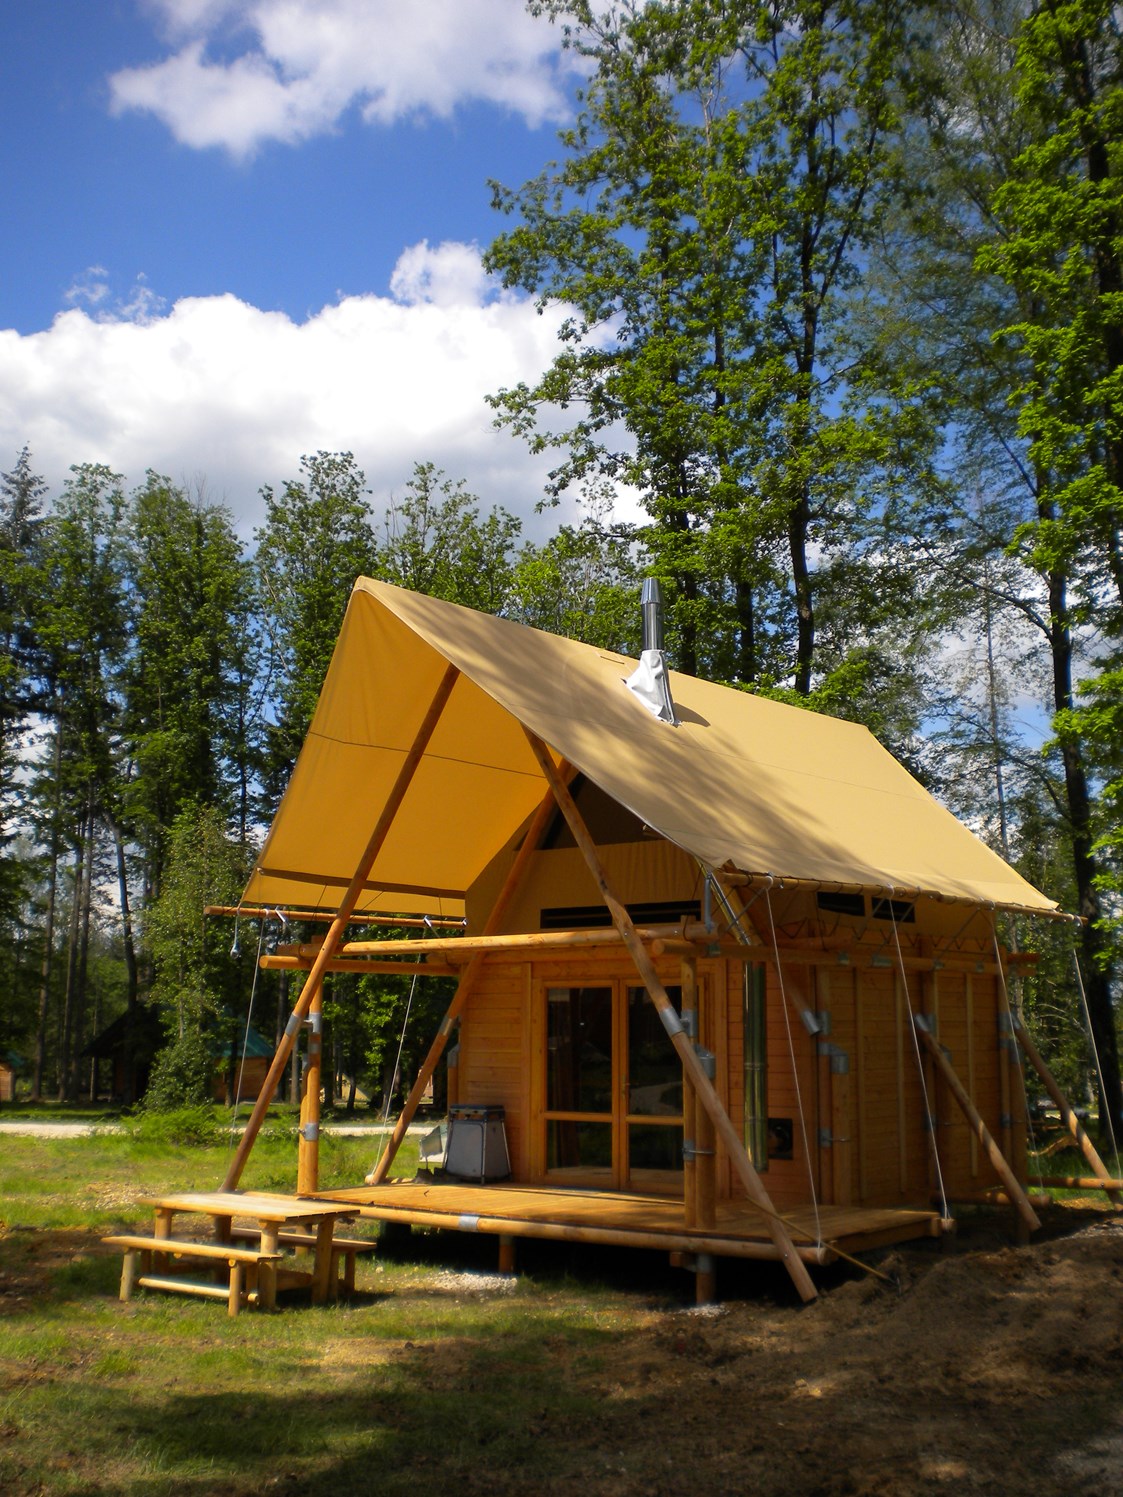 Glampingunterkunft: Cahutte Aussenansicht  - Cahutte für naturnahe Ferien auf Camping Huttopia Versailles